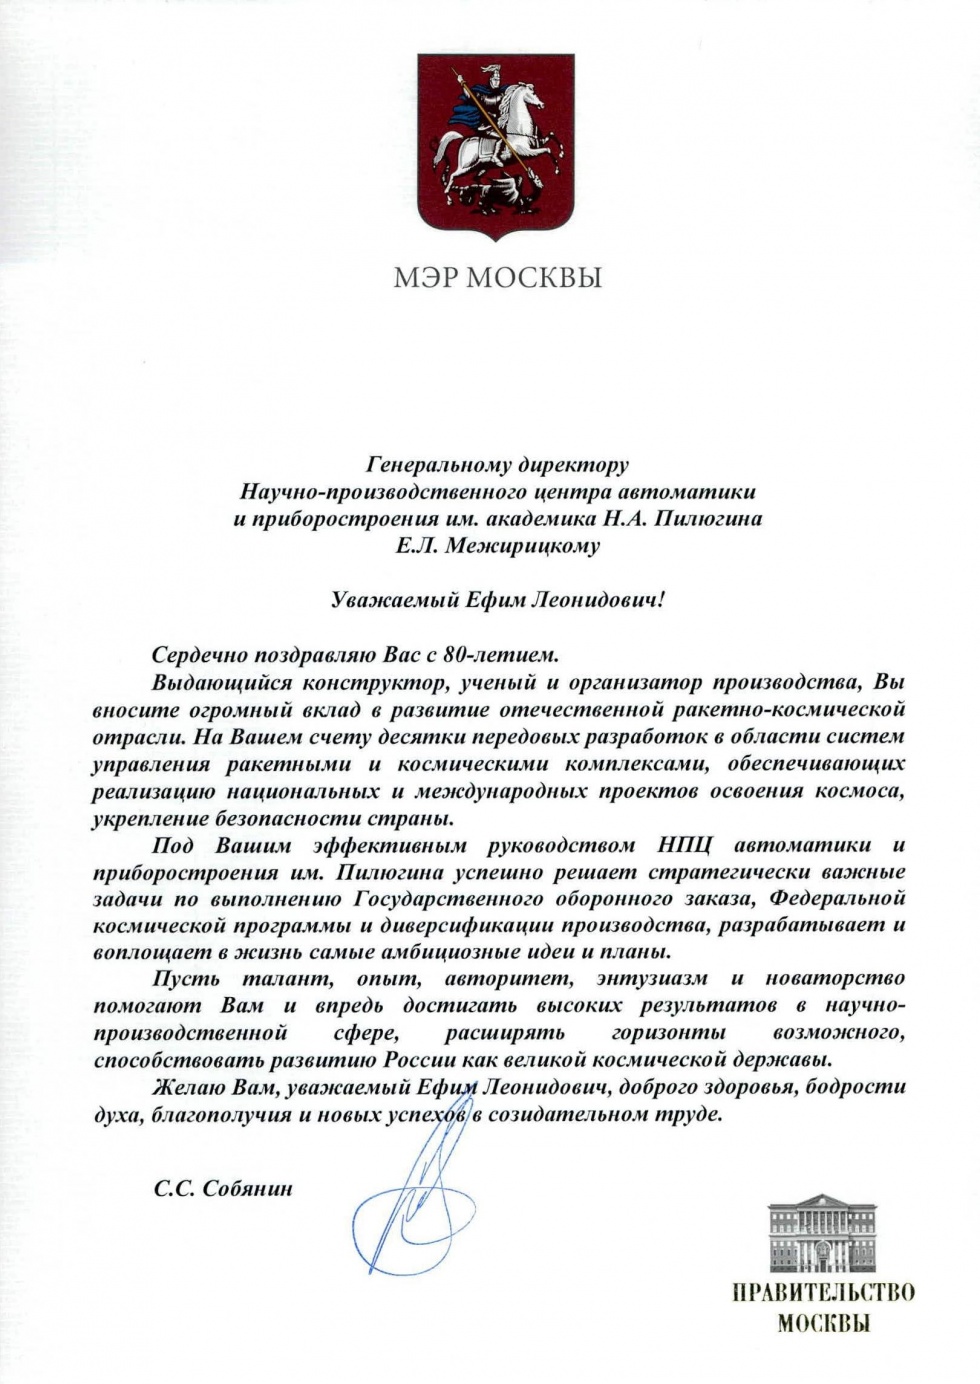 Поздравление мэра города Москвы Сергея Собянина